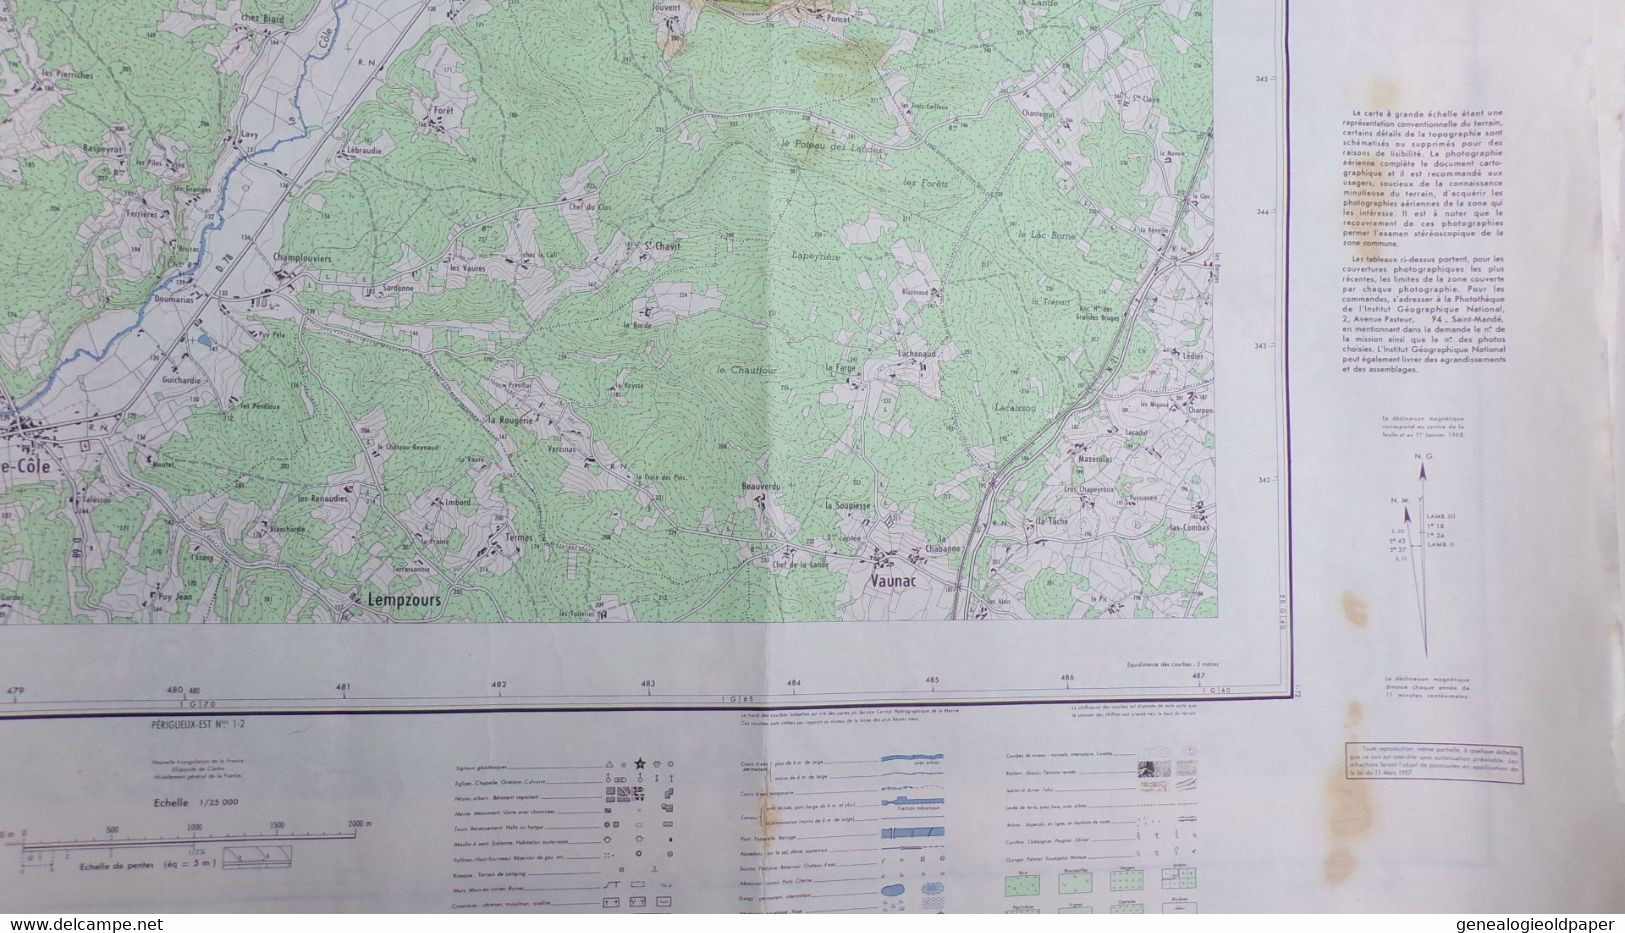 24-THIVIERS-CARTE GEOGRAPHIQUE 1967-ST SAINT JEAN DE COLE-ST PIERRE-VAUNAC-ST ROMAIN ST CLEMENT-CHAPELLE FAUCHER-VILLARS - Topographical Maps